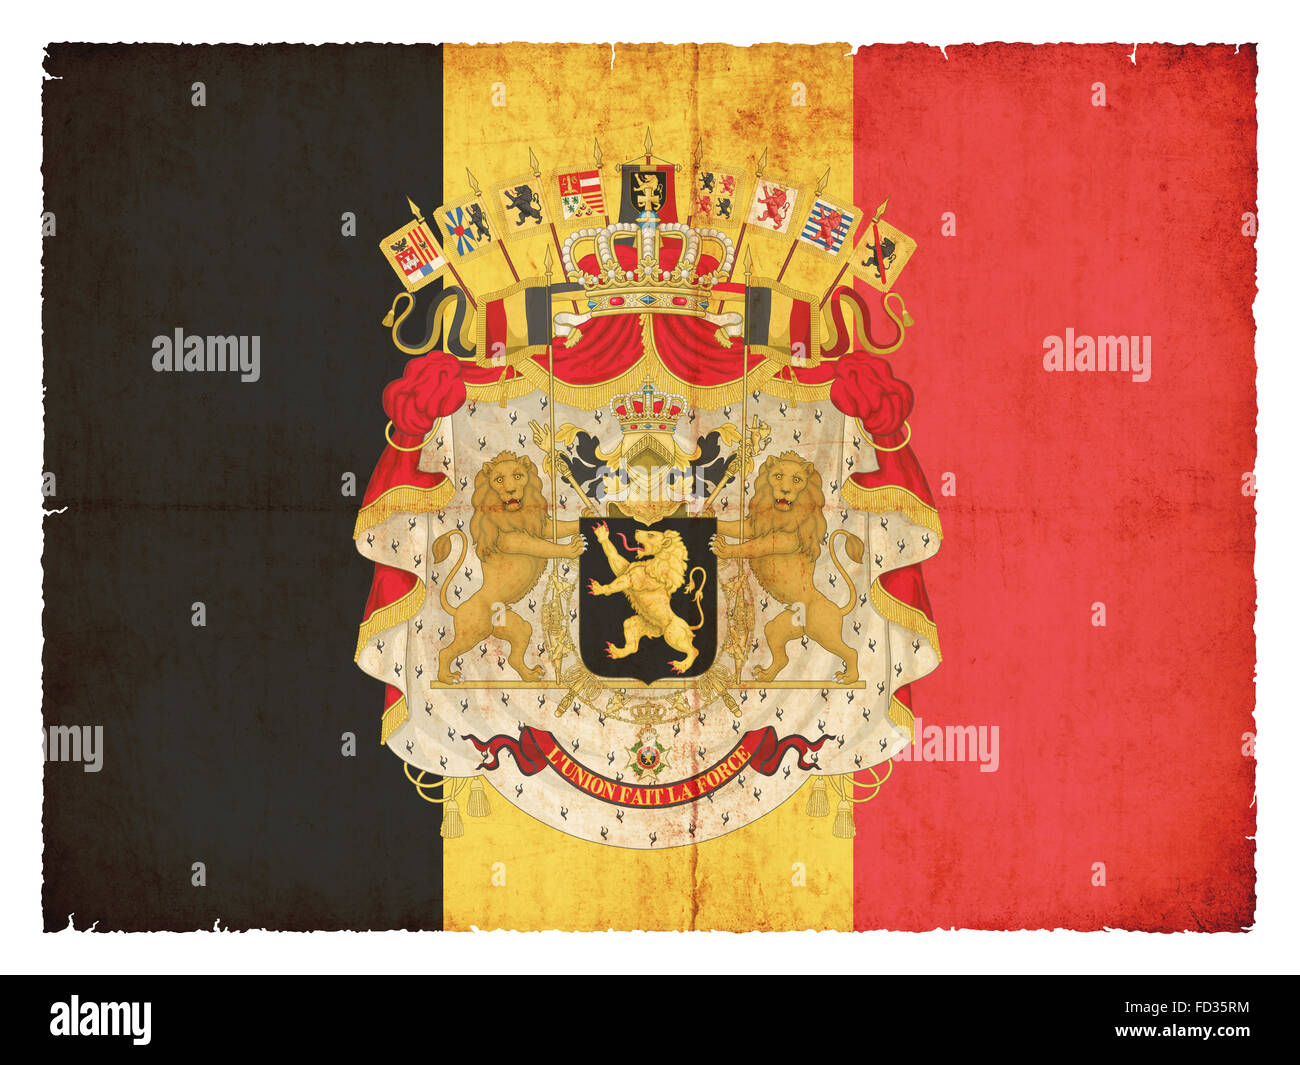 Drapeau national de Belgique armoiries créées dans un style grunge Banque D'Images